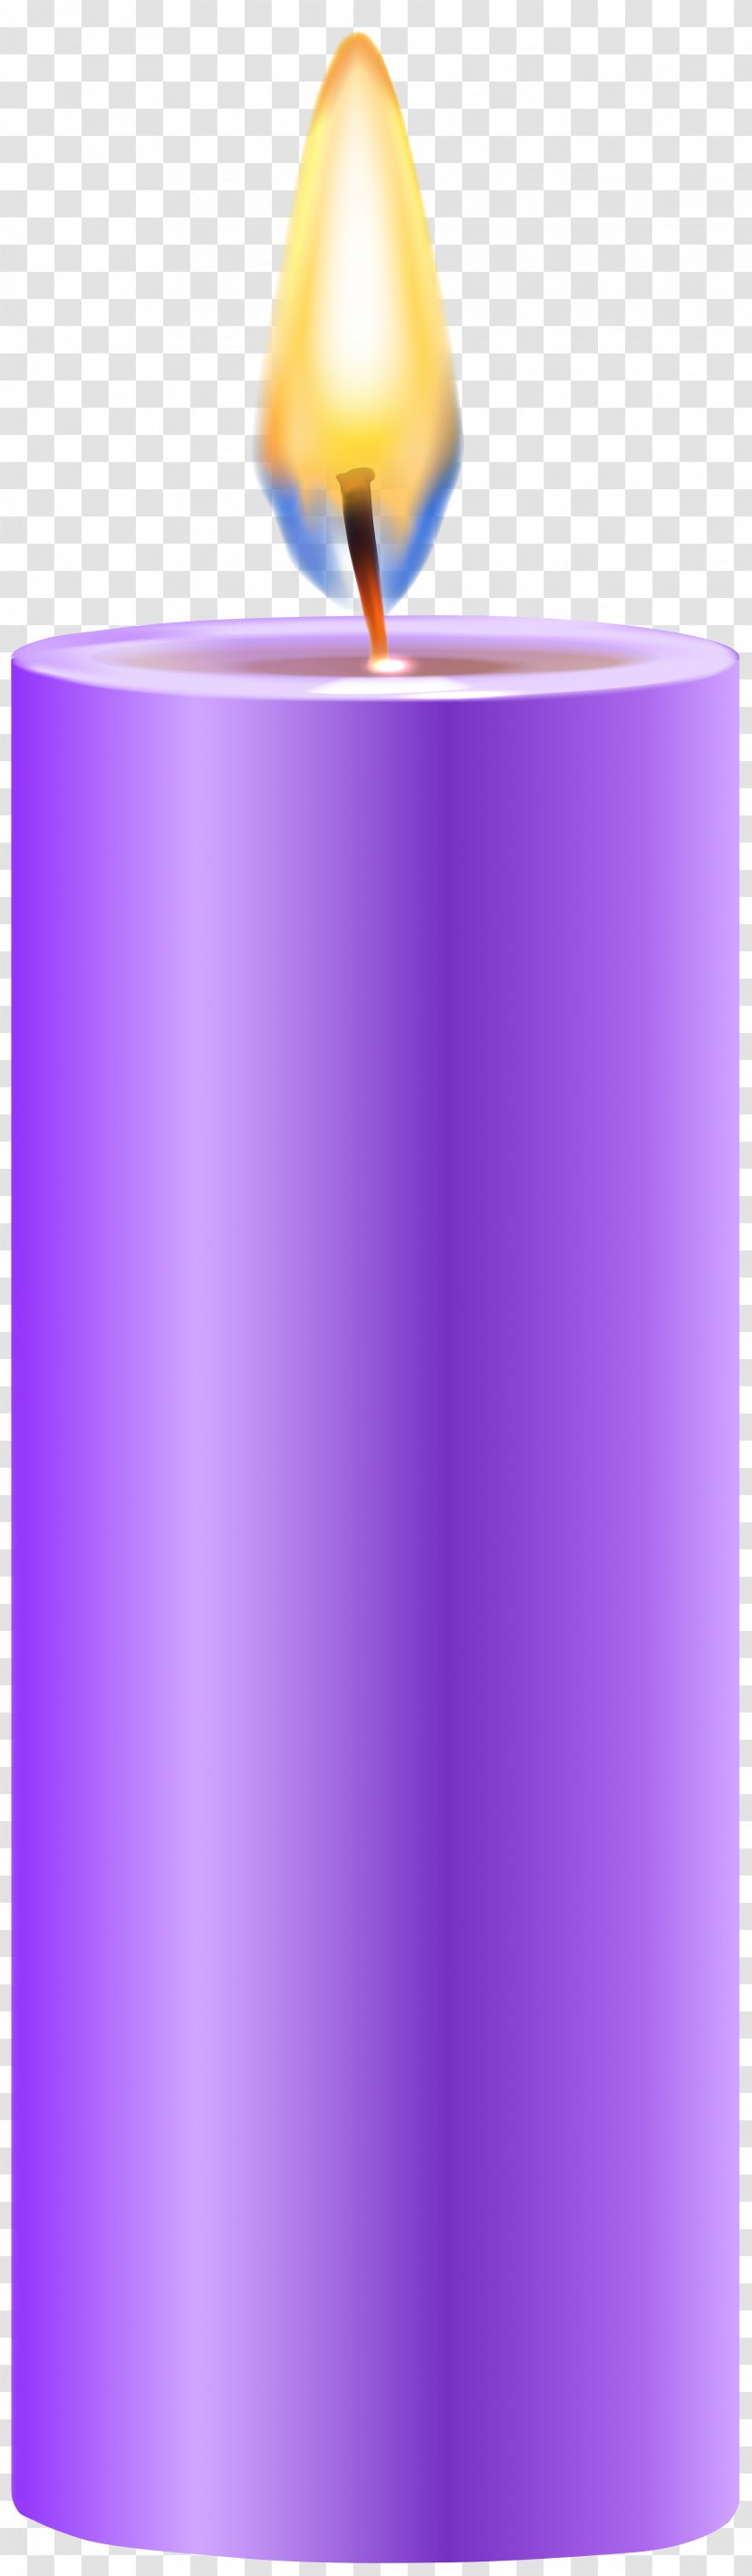 Purple Candle Color Clip Art - Lighting Transparent PNG